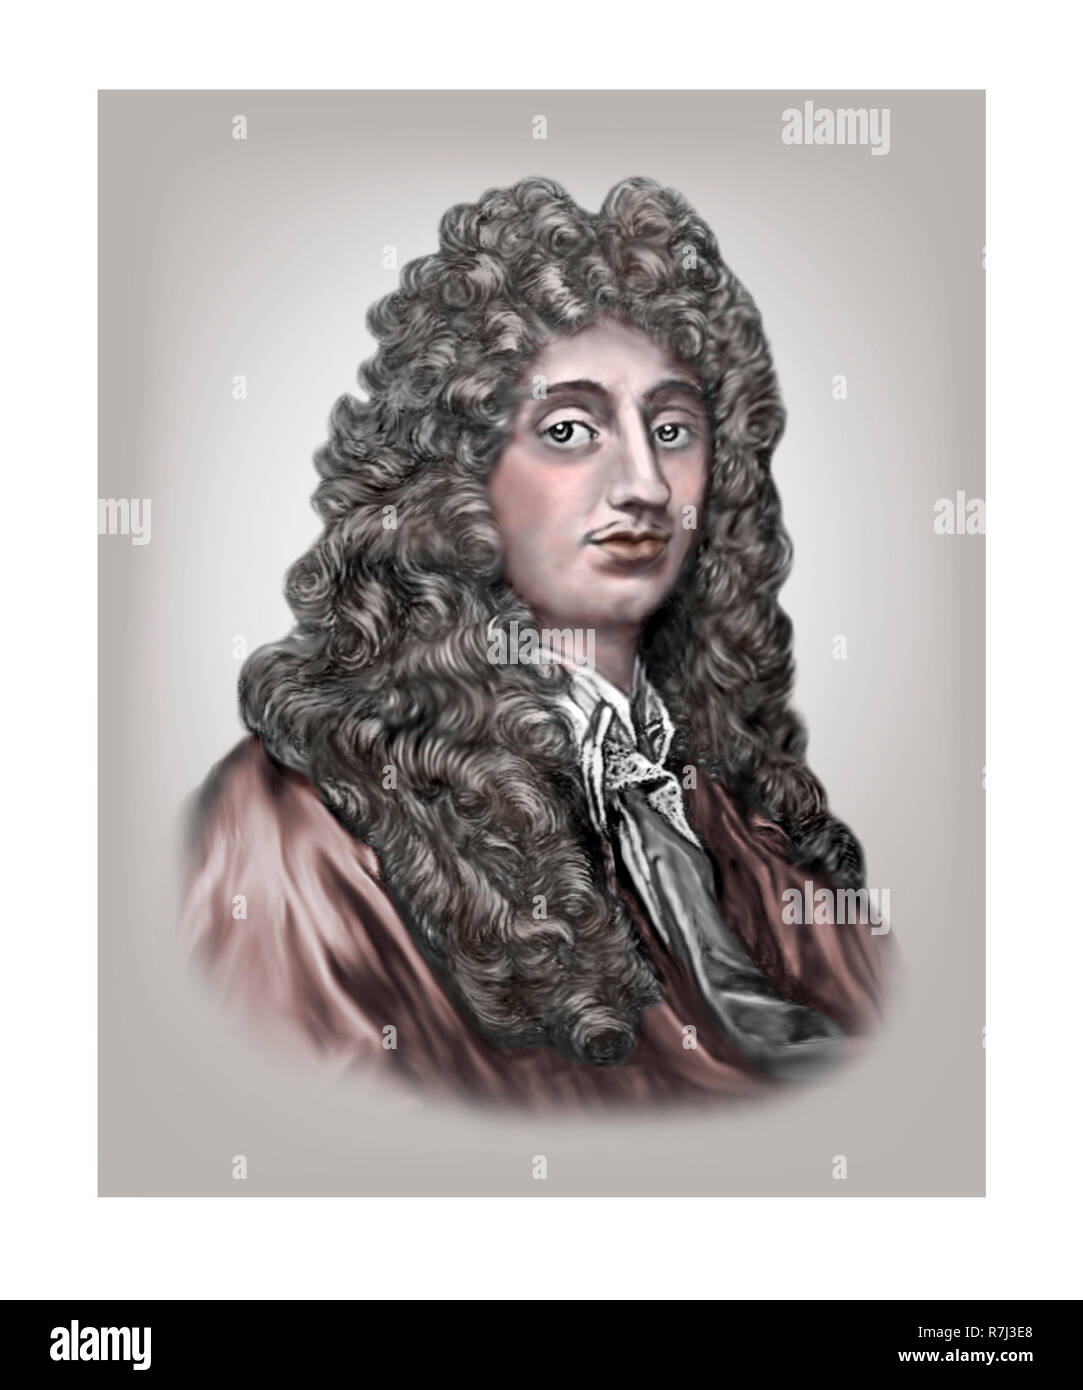 Christiaan Huygens 1629 - 1695 physicien astronome mathématicien hollandais inventeur Banque D'Images